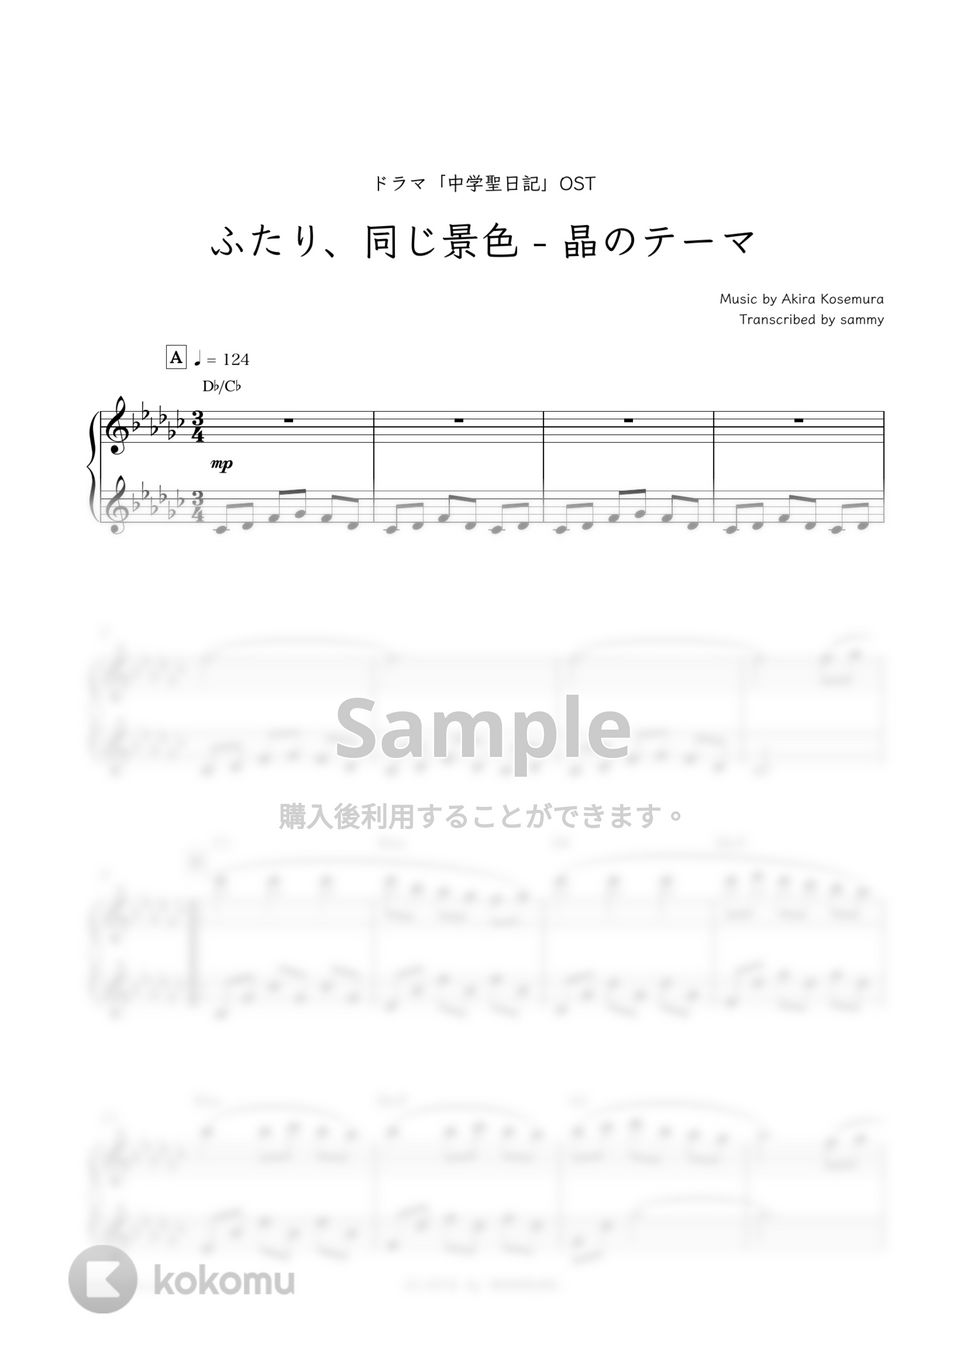 ドラマ『中学聖日記』OST - ふたり、同じ景色-晶のテーマ by sammy